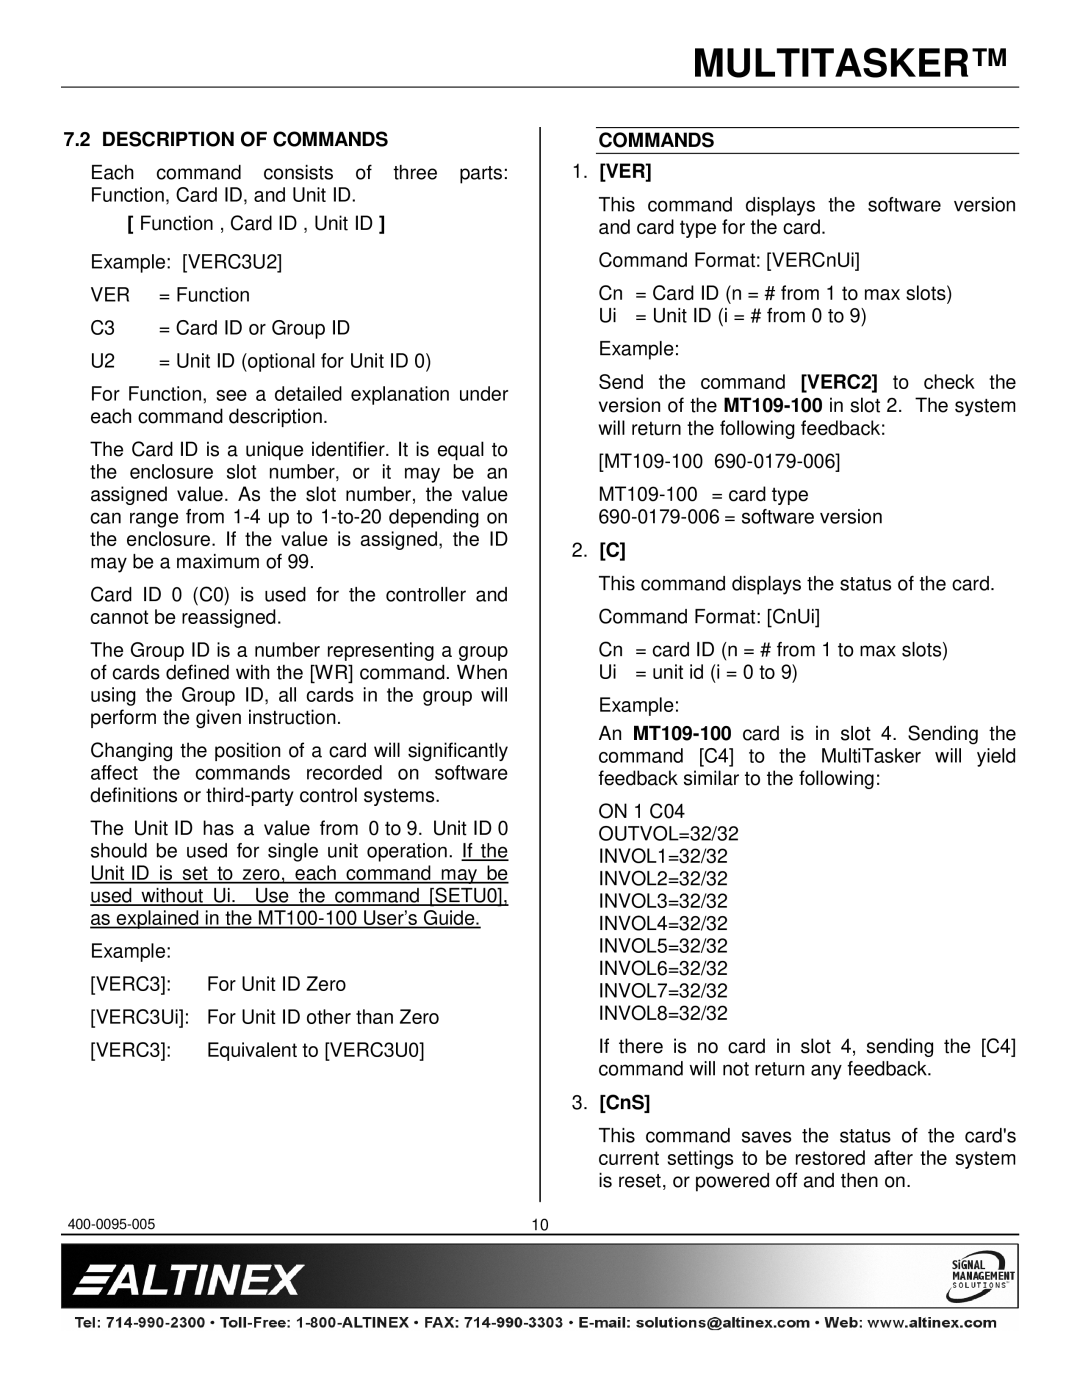 Altinex MT109-100 manual Description of Commands, Ver, CnS 